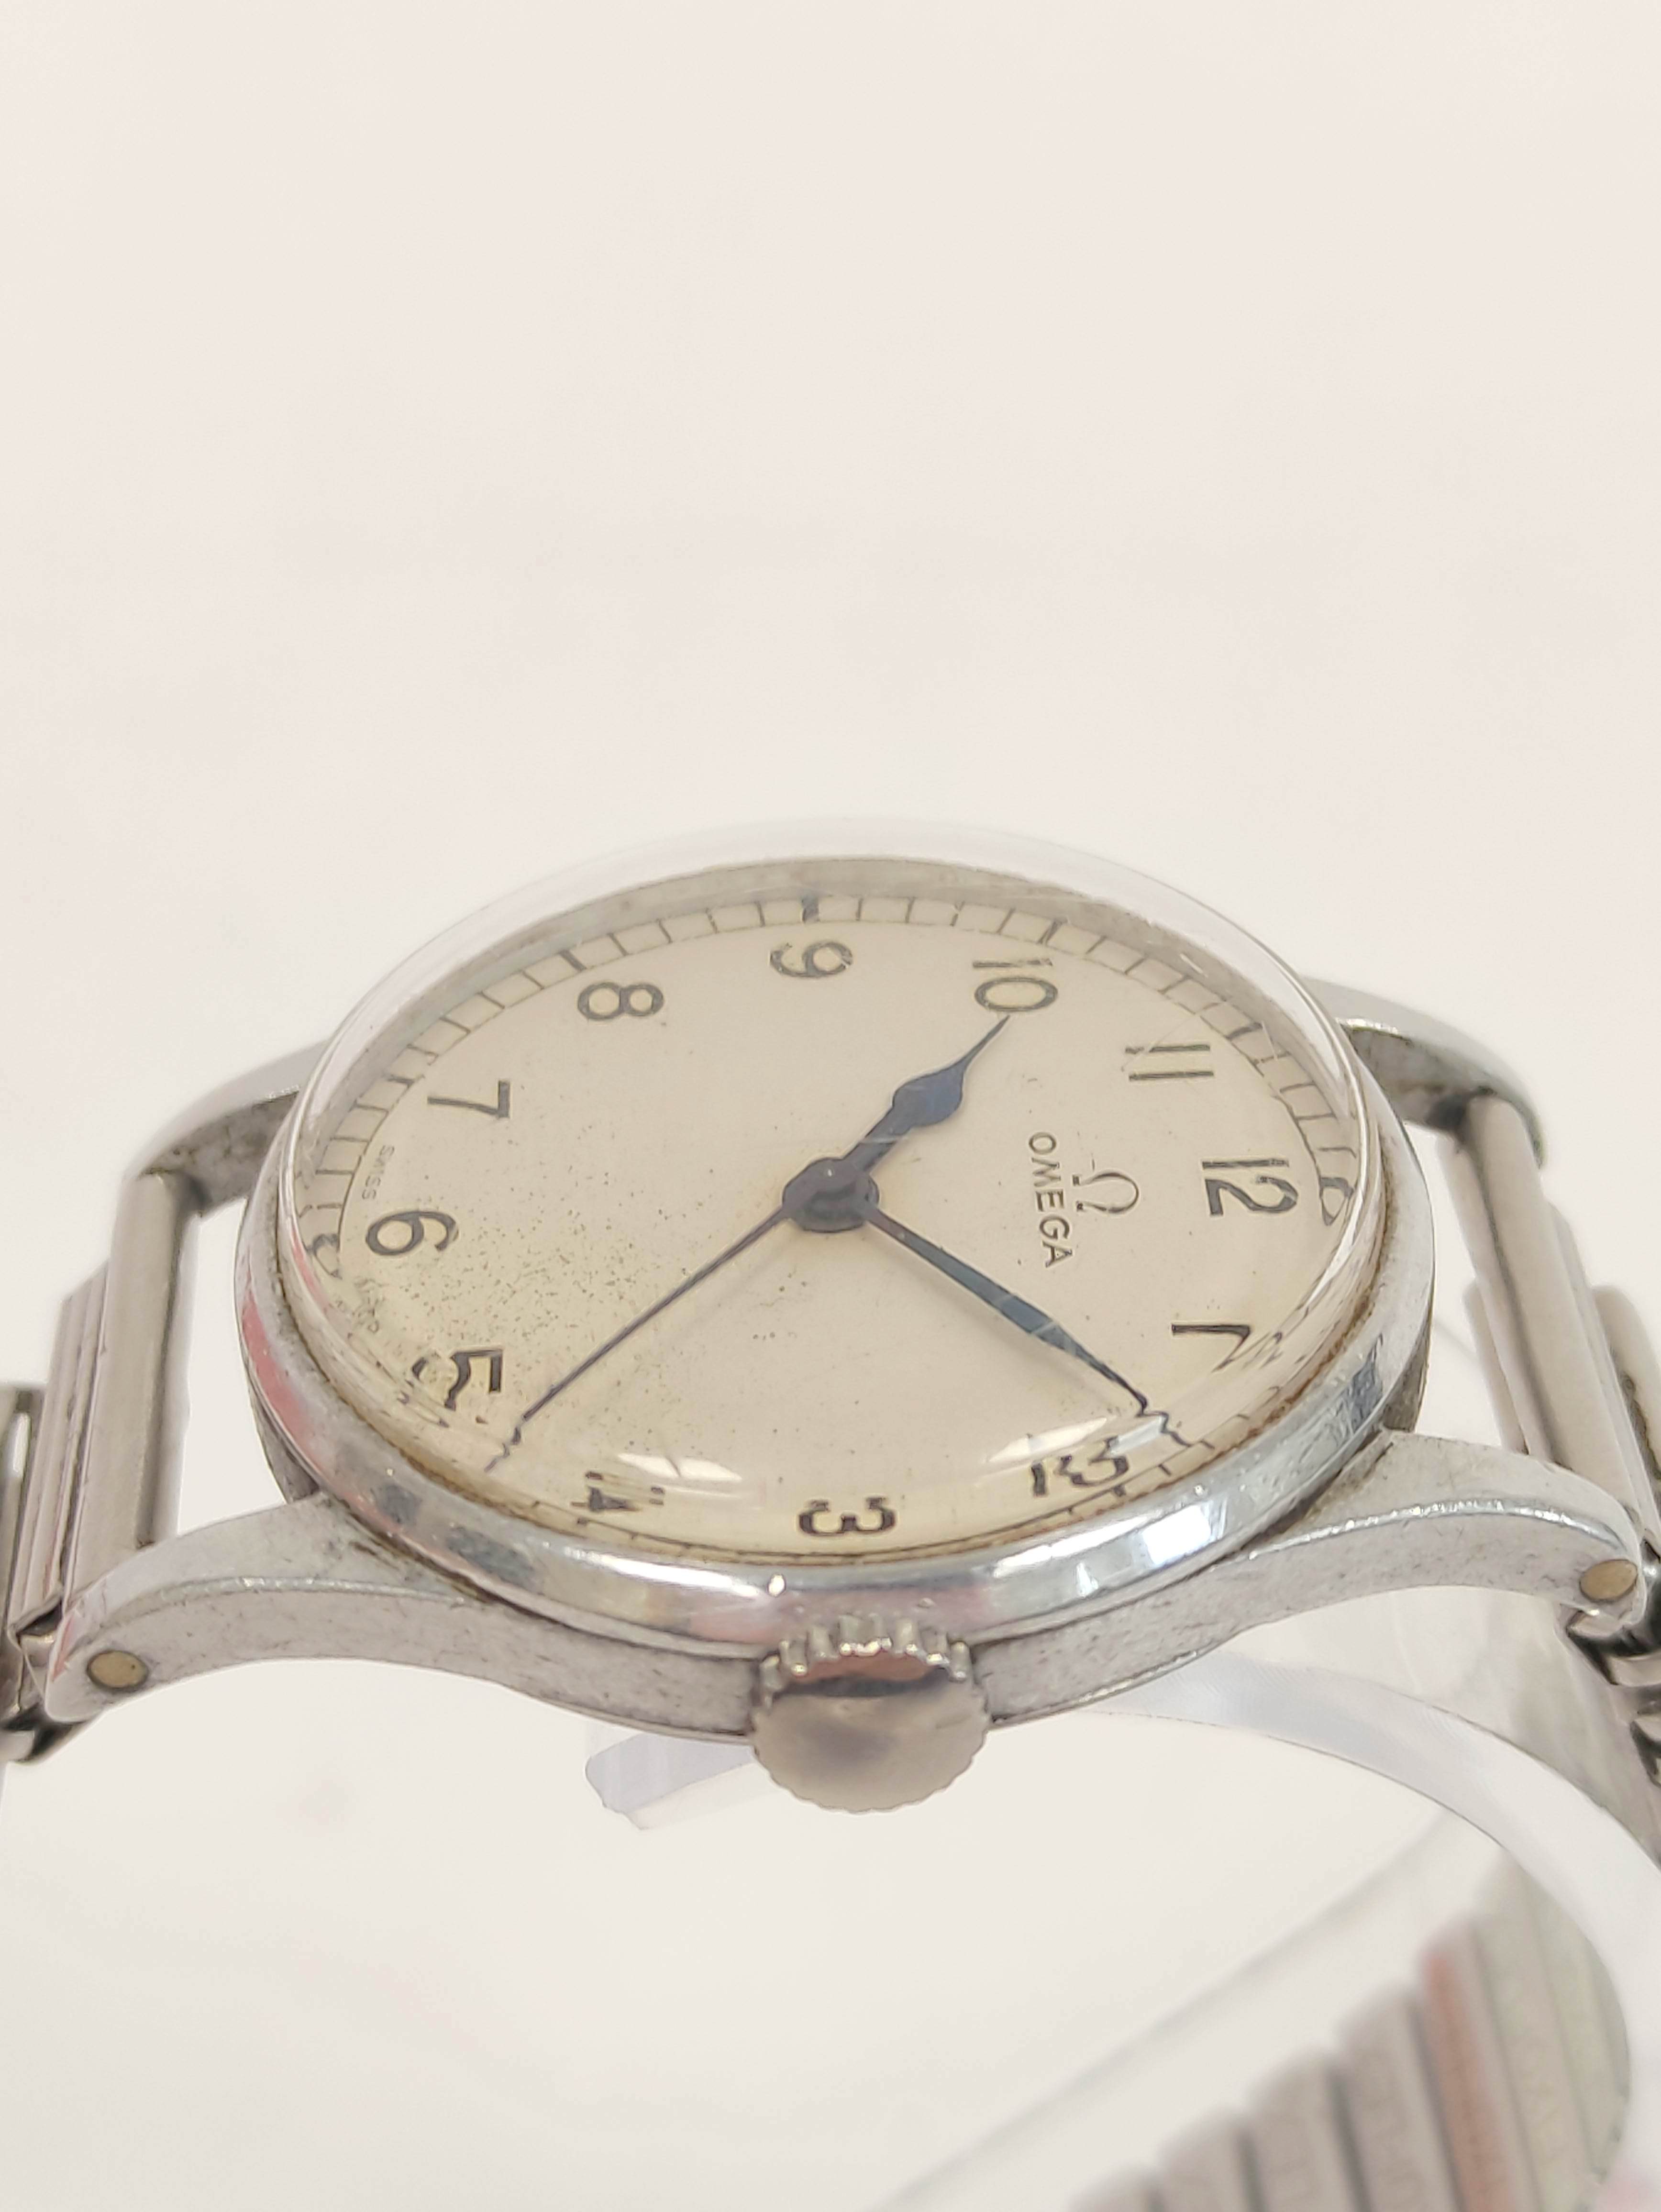 Omega Navigator watch, calibre 30T25C, No 9862181, 6B159 on bracelet case 2292,  1943. - Image 3 of 7